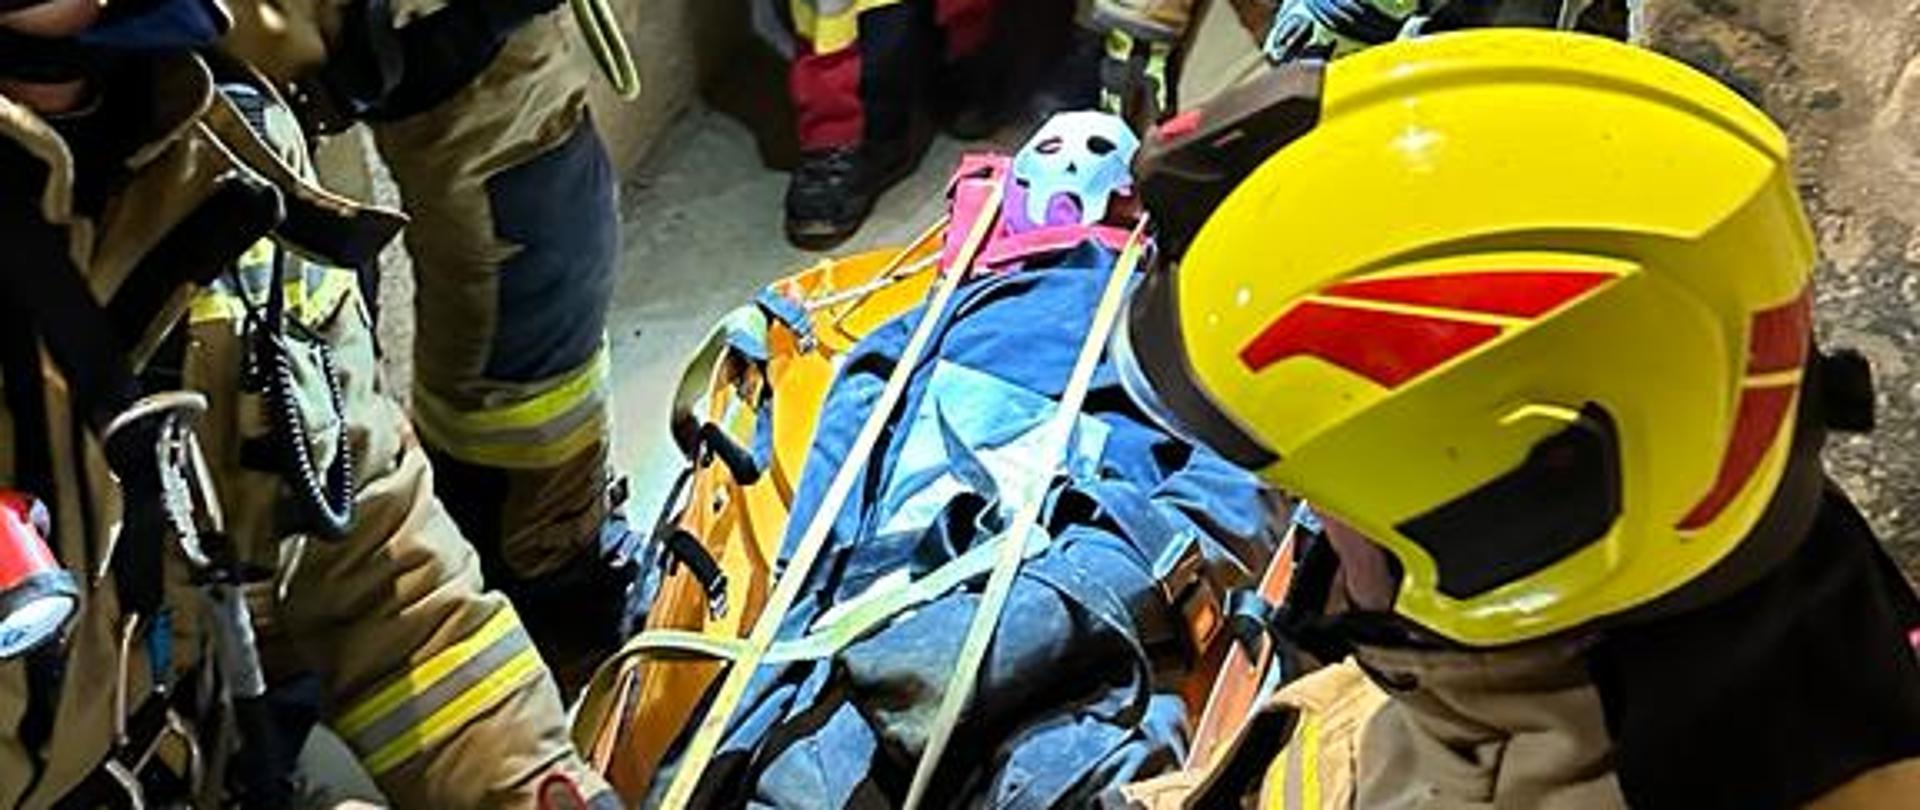 Strażacy podczas ćwiczeń w wąskim przejściu kopalni. Na podłodze widoczna jest osoba poszkodowana na noszach ratowniczych przygotowana do ewakuacji.